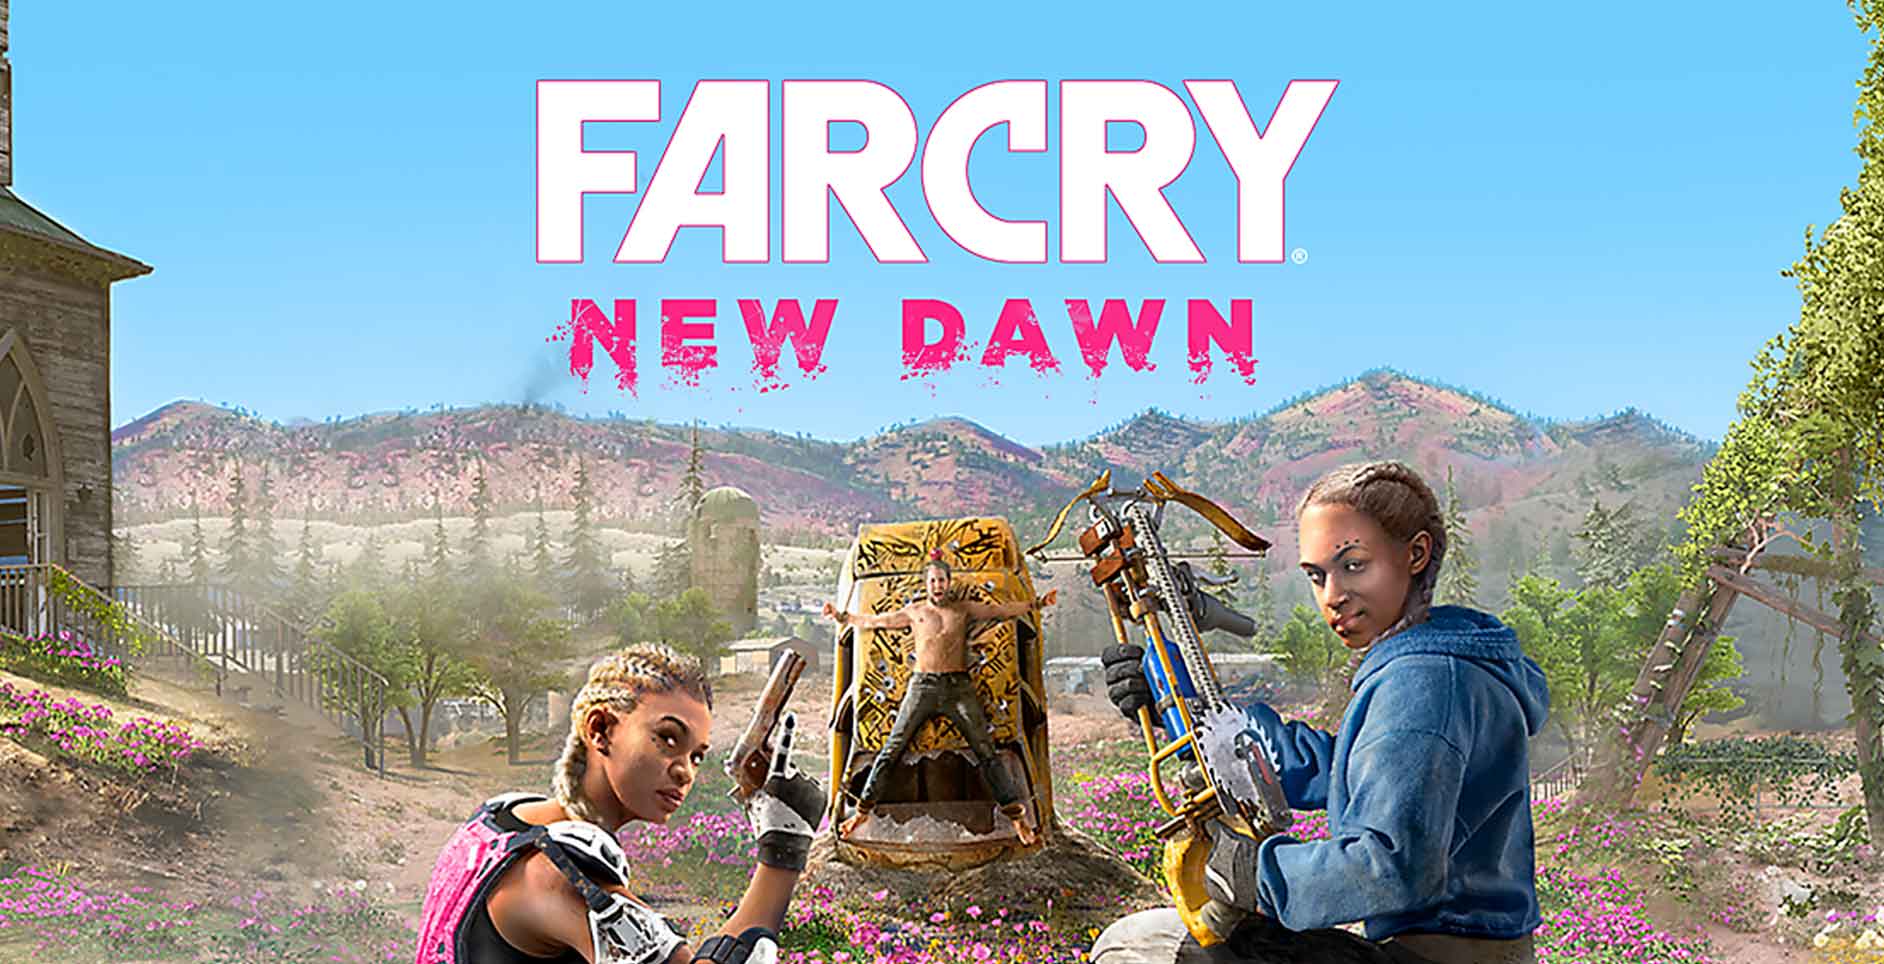 Download Far Cry New Dawn-CODEX